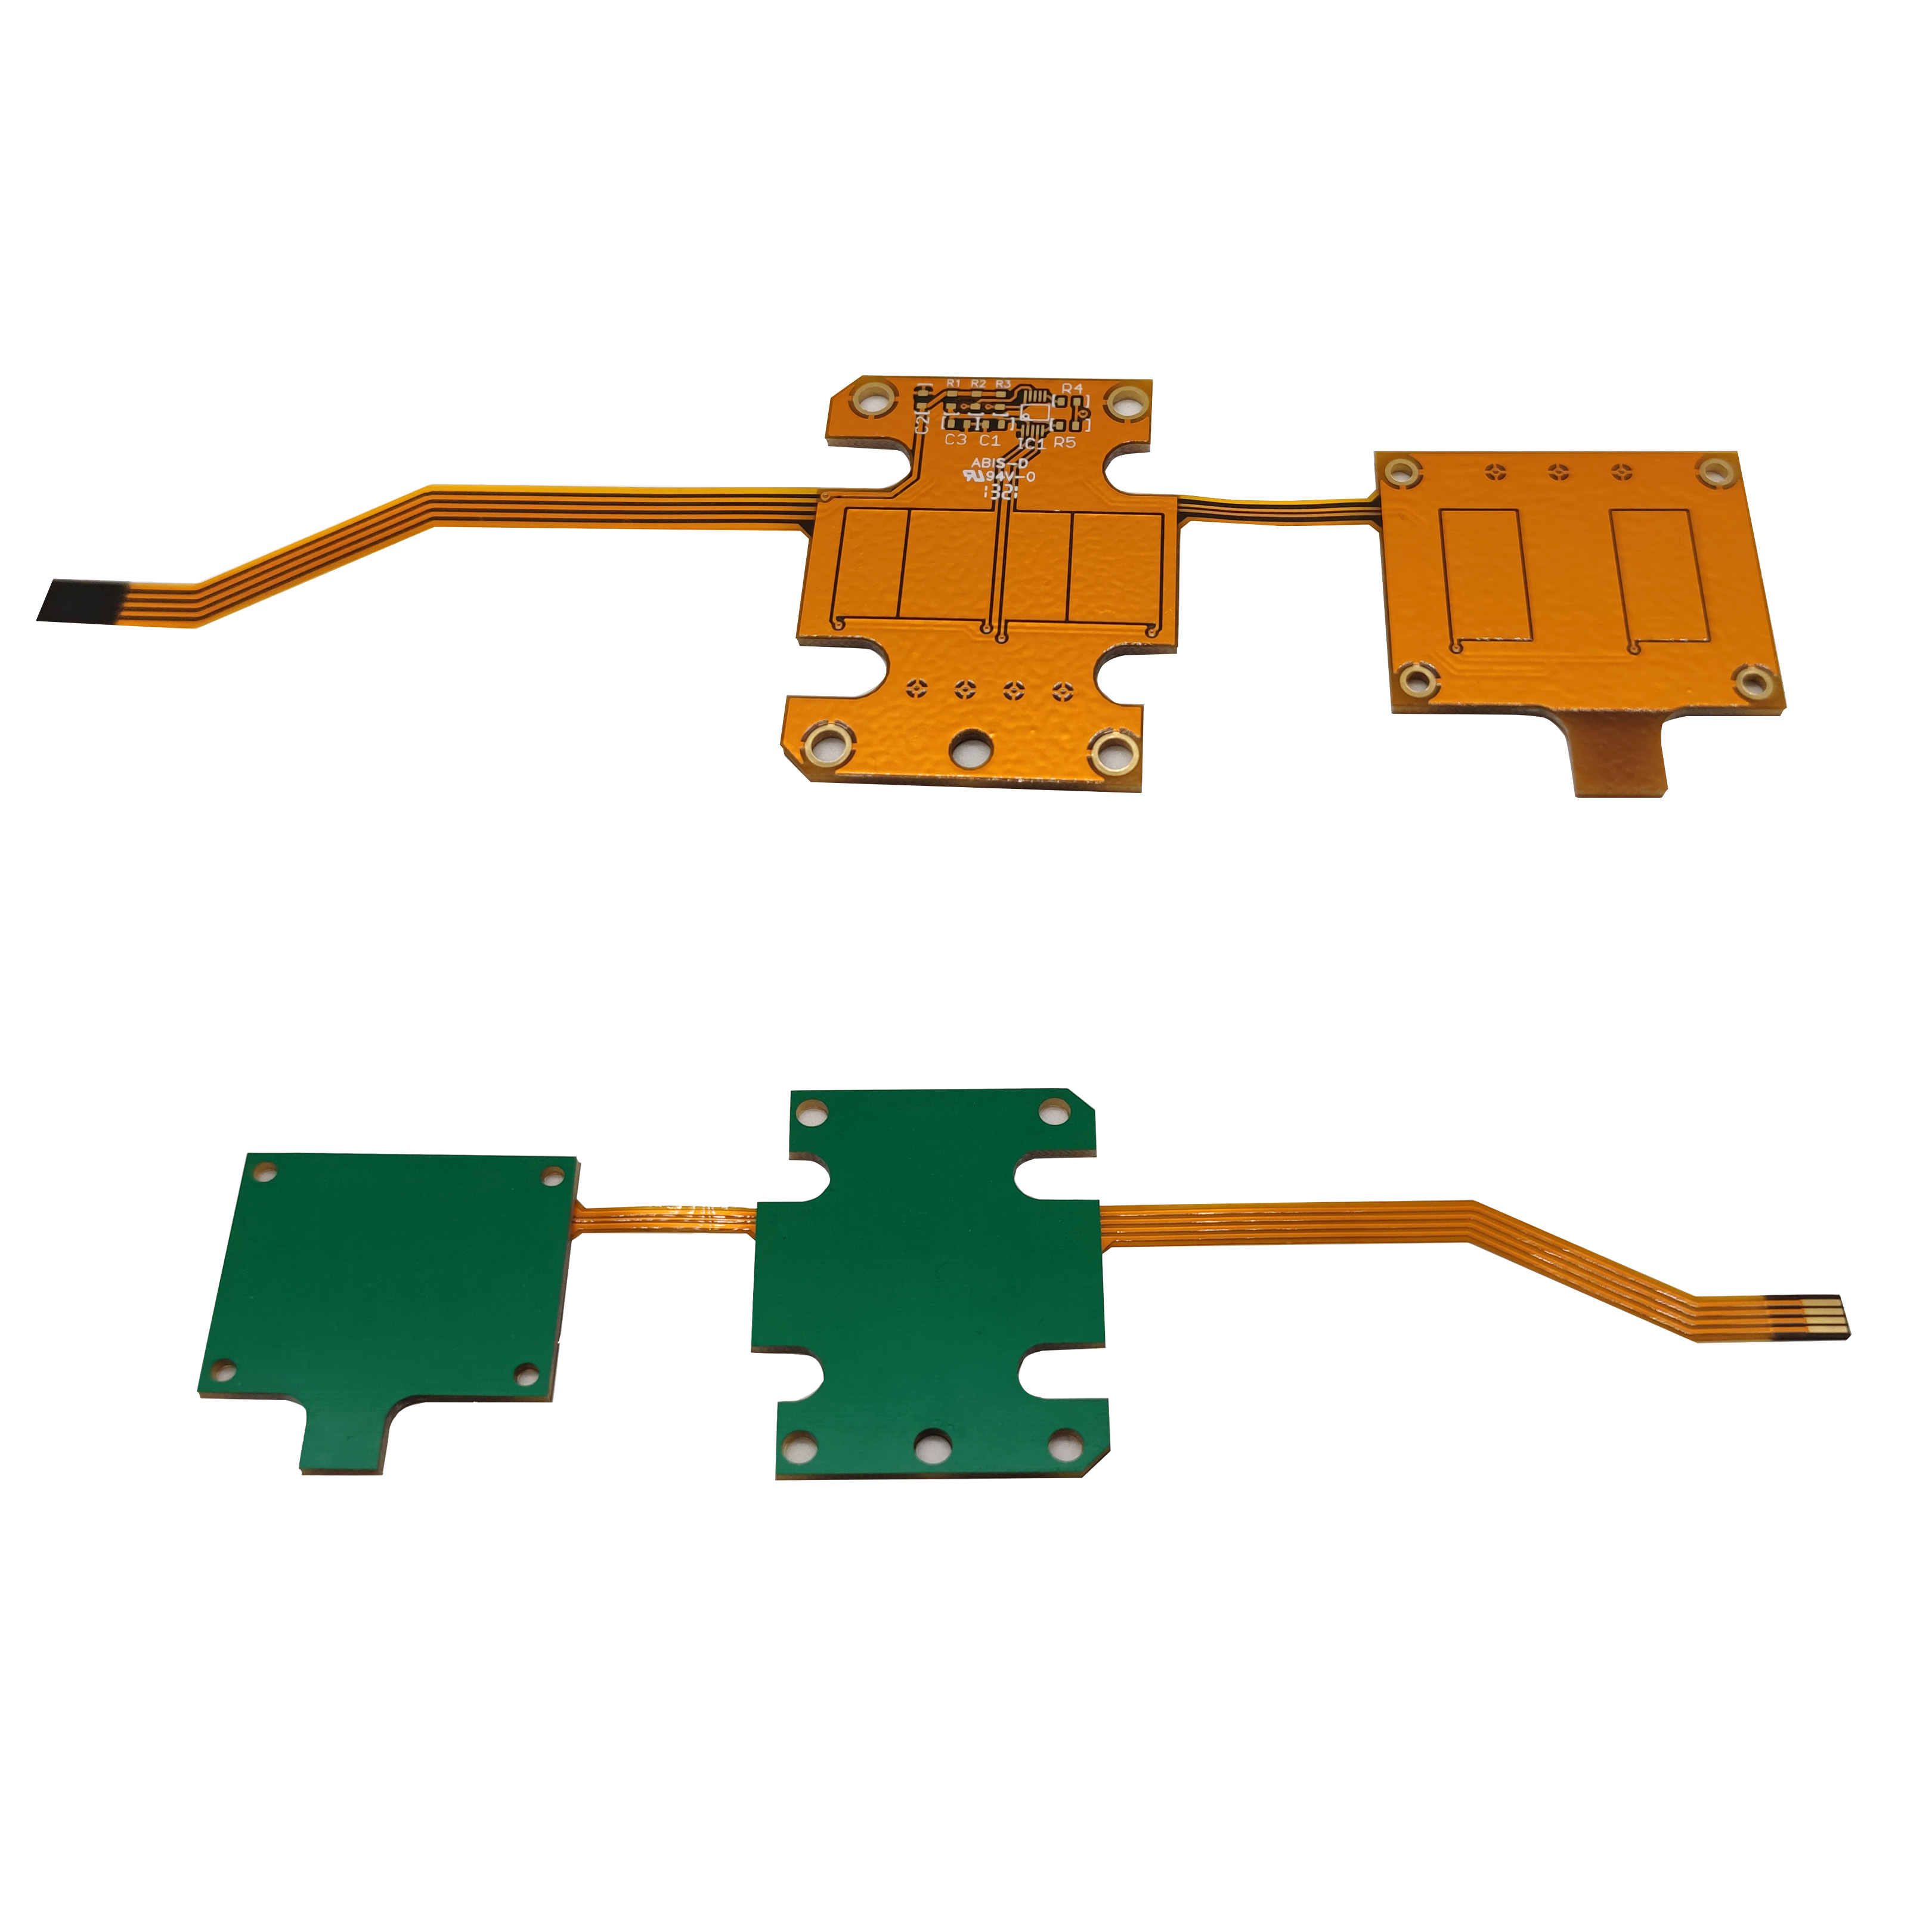 2 akaturikidzana Tsika PI Stiffeners Flexible Yakadhindwa Circuit Boards PCBs Featured Image